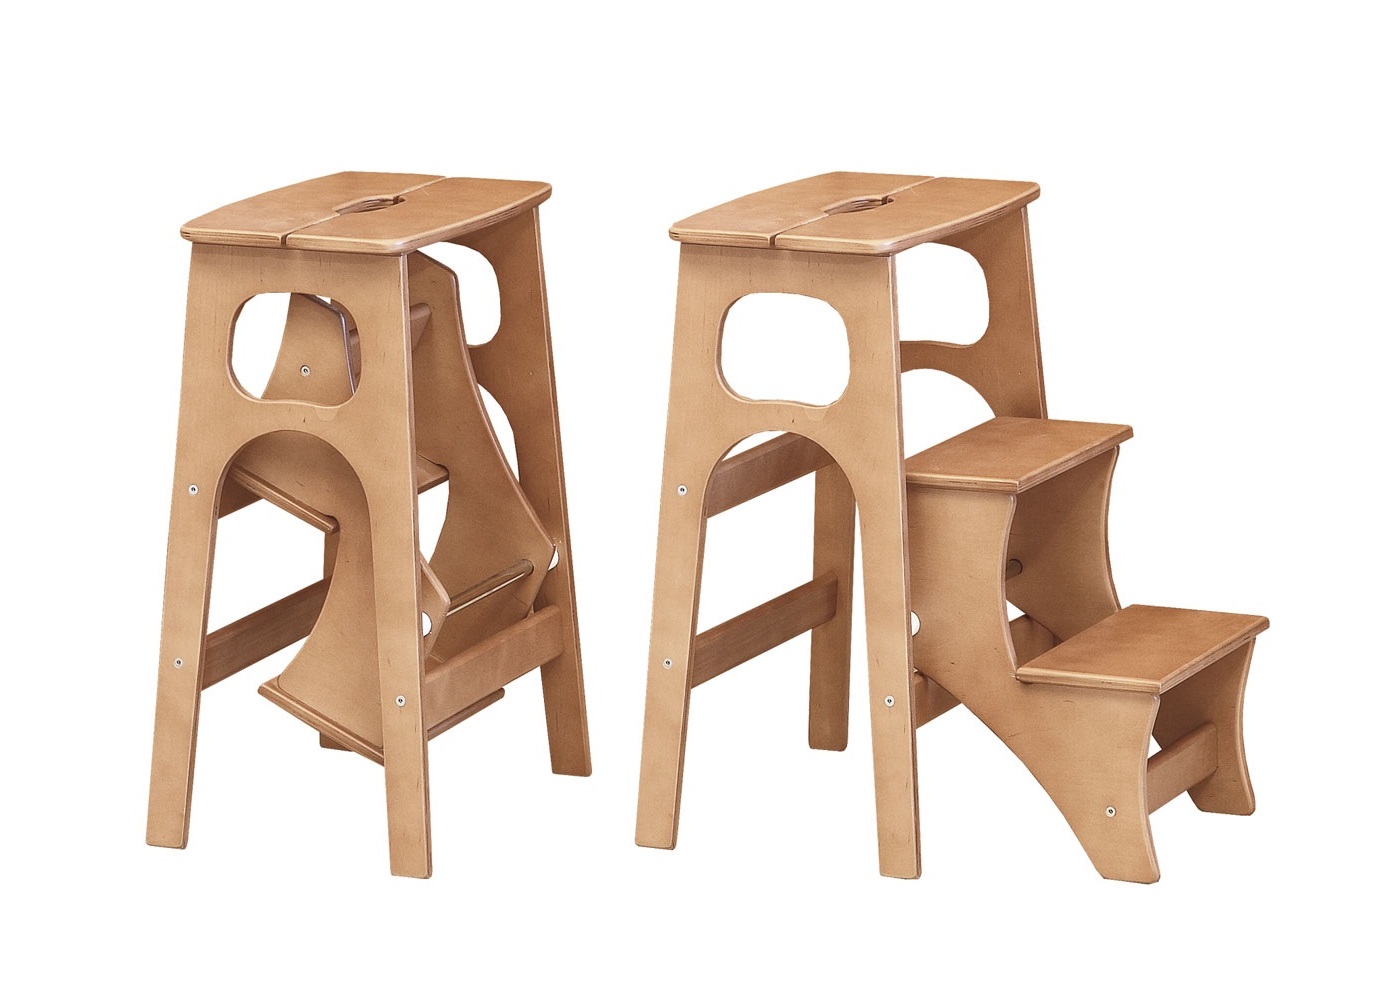 стул стремянка складной деревянный